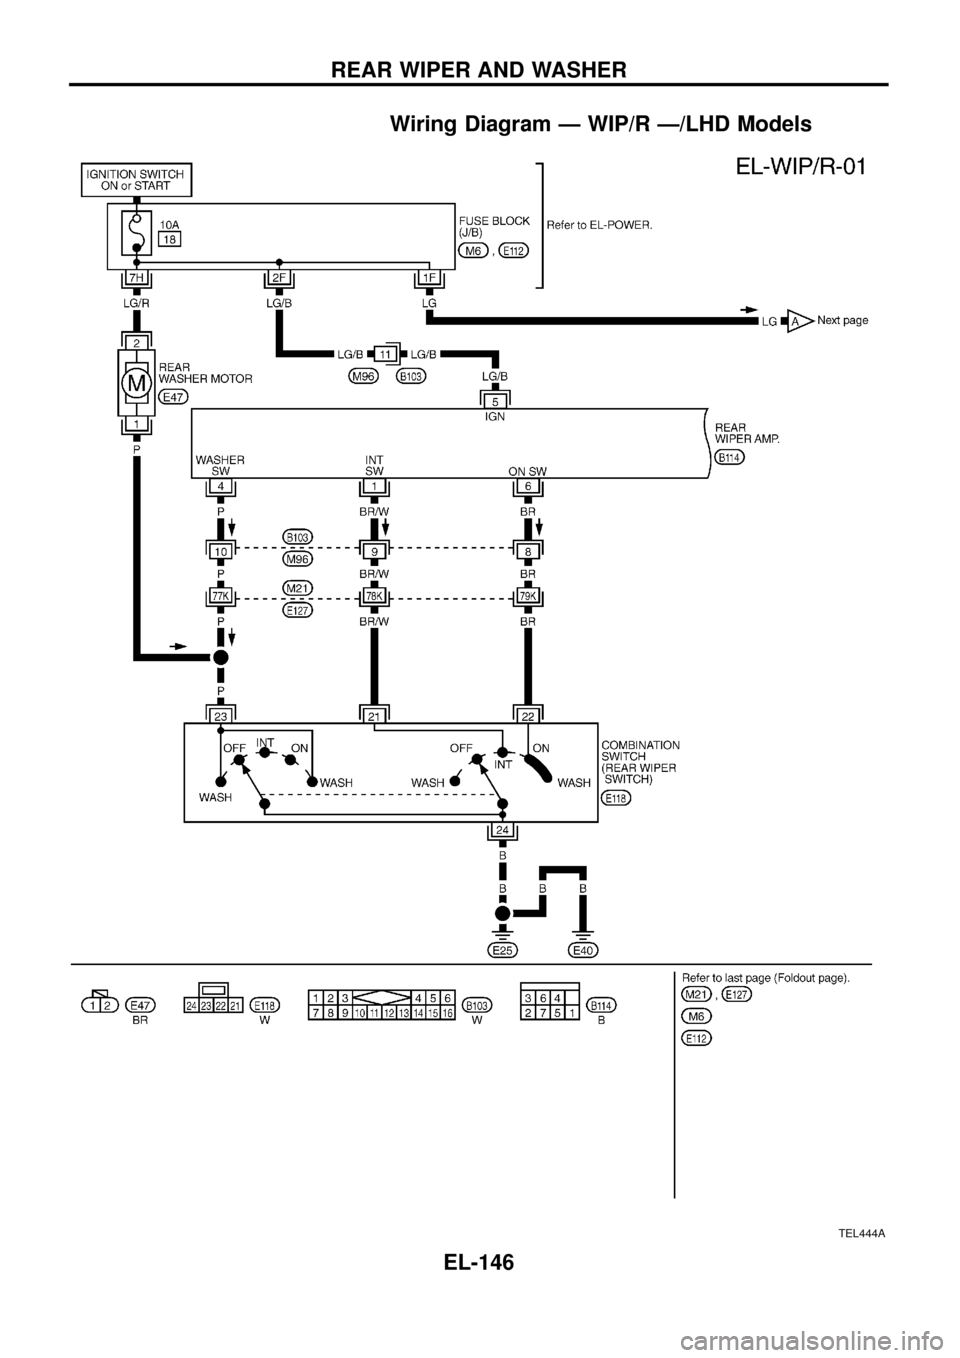 NISSAN PATROL 1998 Y61 / 5.G Electrical System Workshop Manual Wiring Diagram Ð WIP/R Ð/LHD Models
TEL444A
REAR WIPER AND WASHER
EL-146 